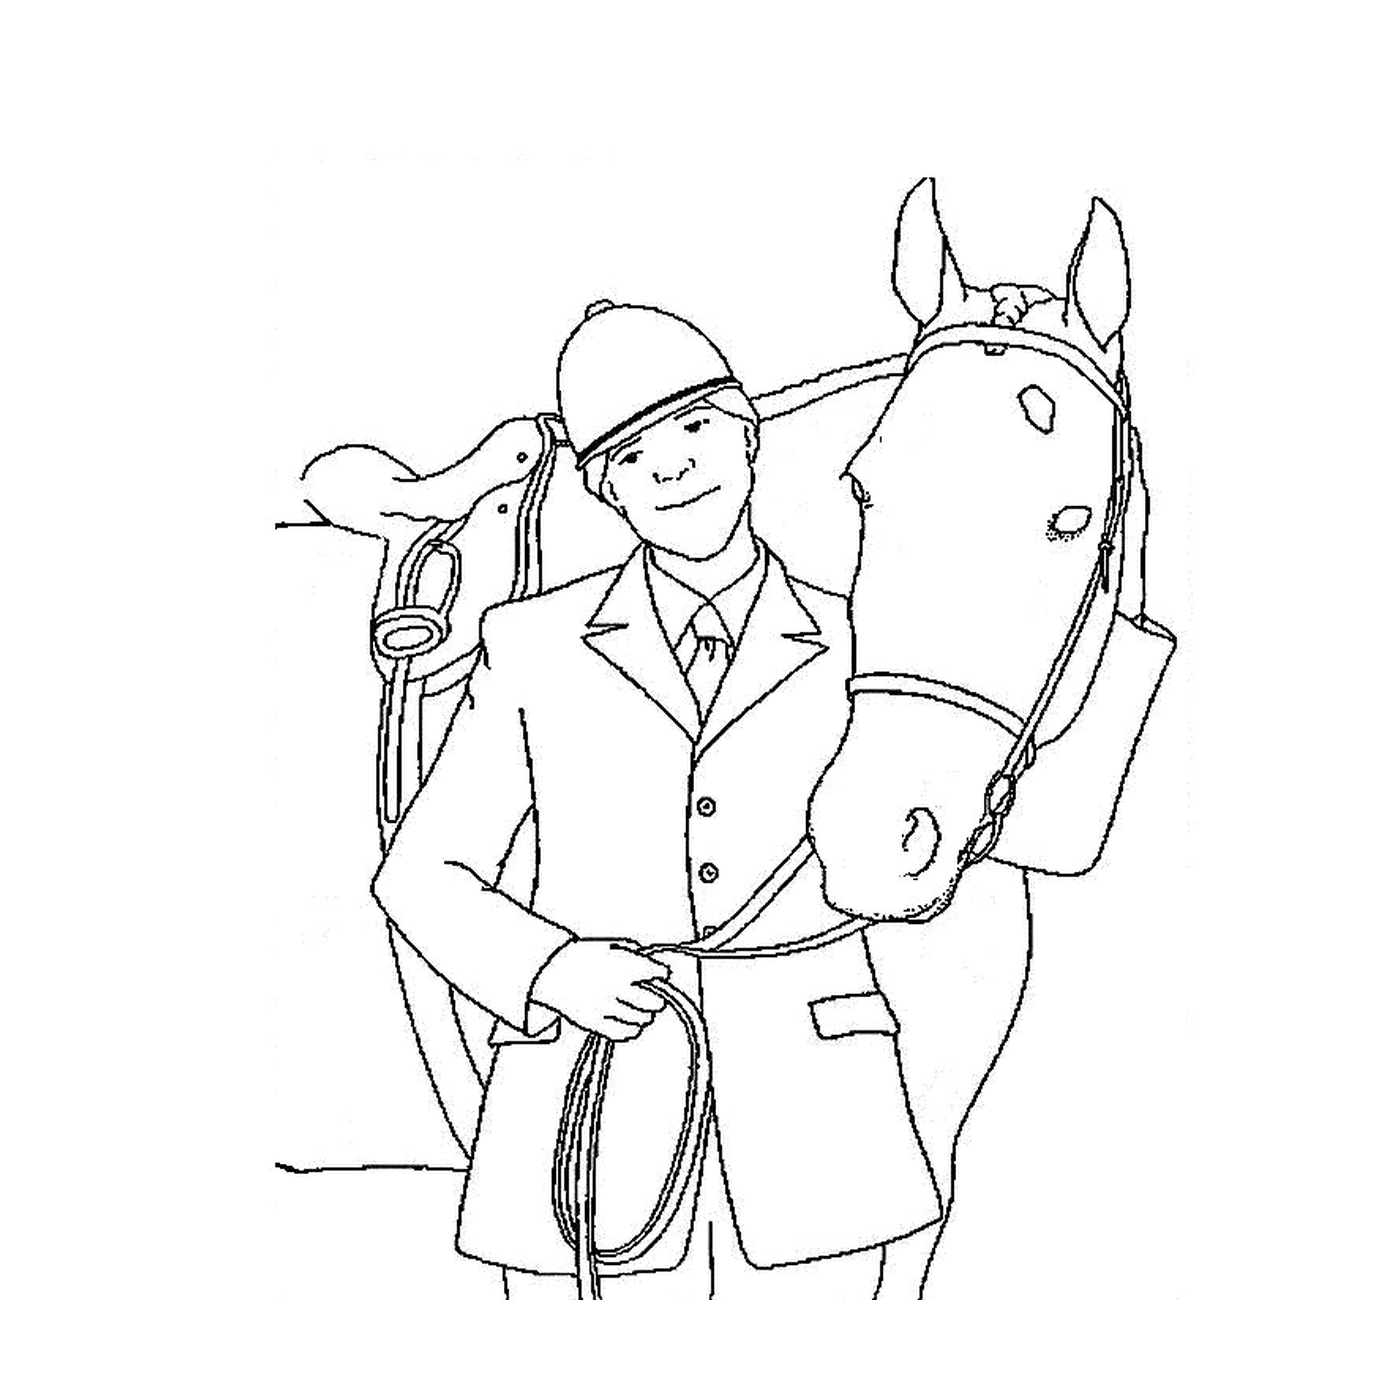   Cavalier sur cheval - Un homme et un cheval 